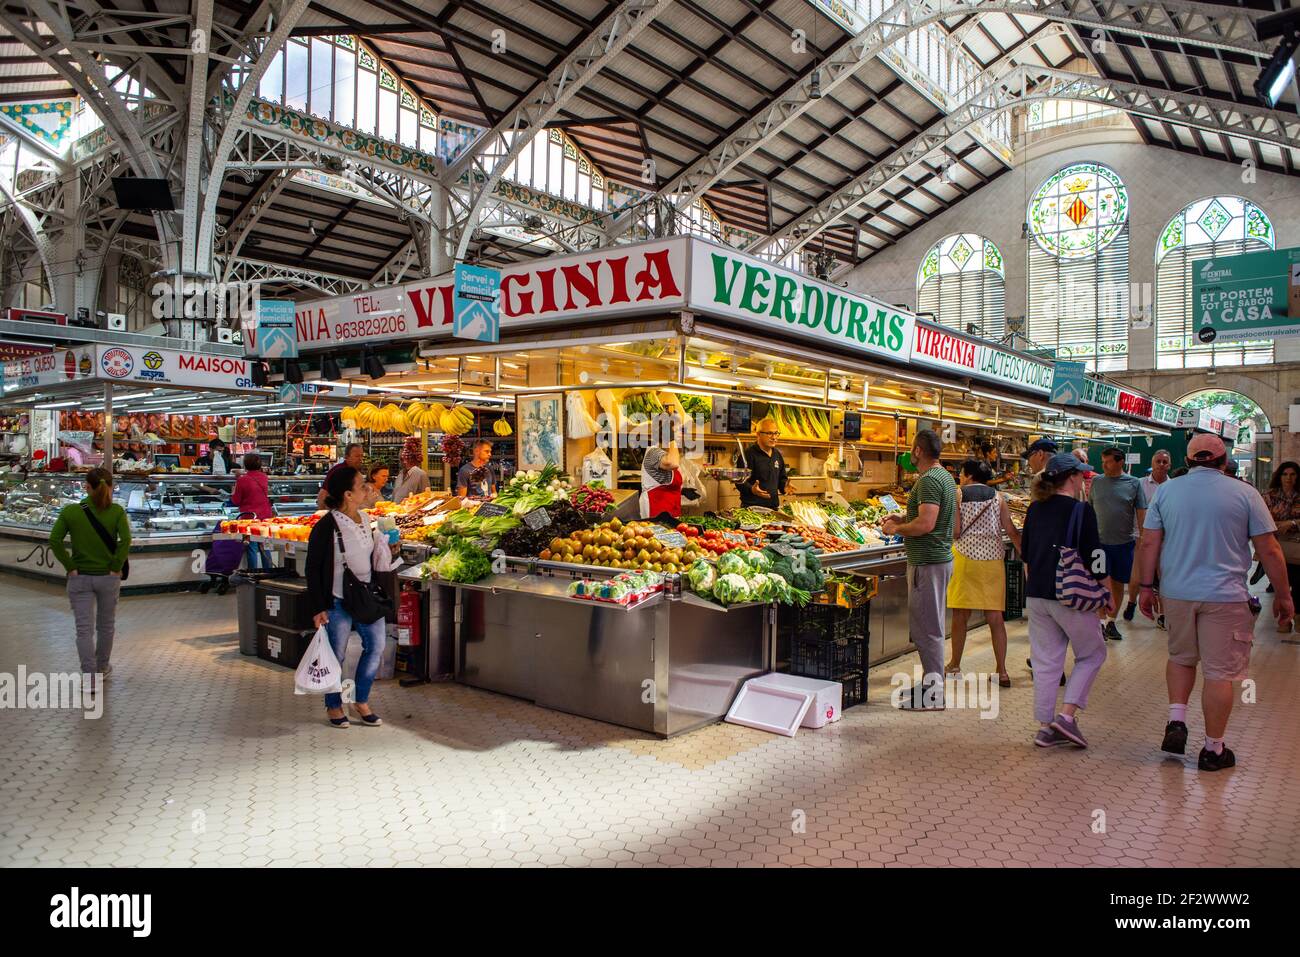 Mercado Central a Valencia, Spagna. Bancarella mercato con verdure fresche e shopping della gente Foto Stock